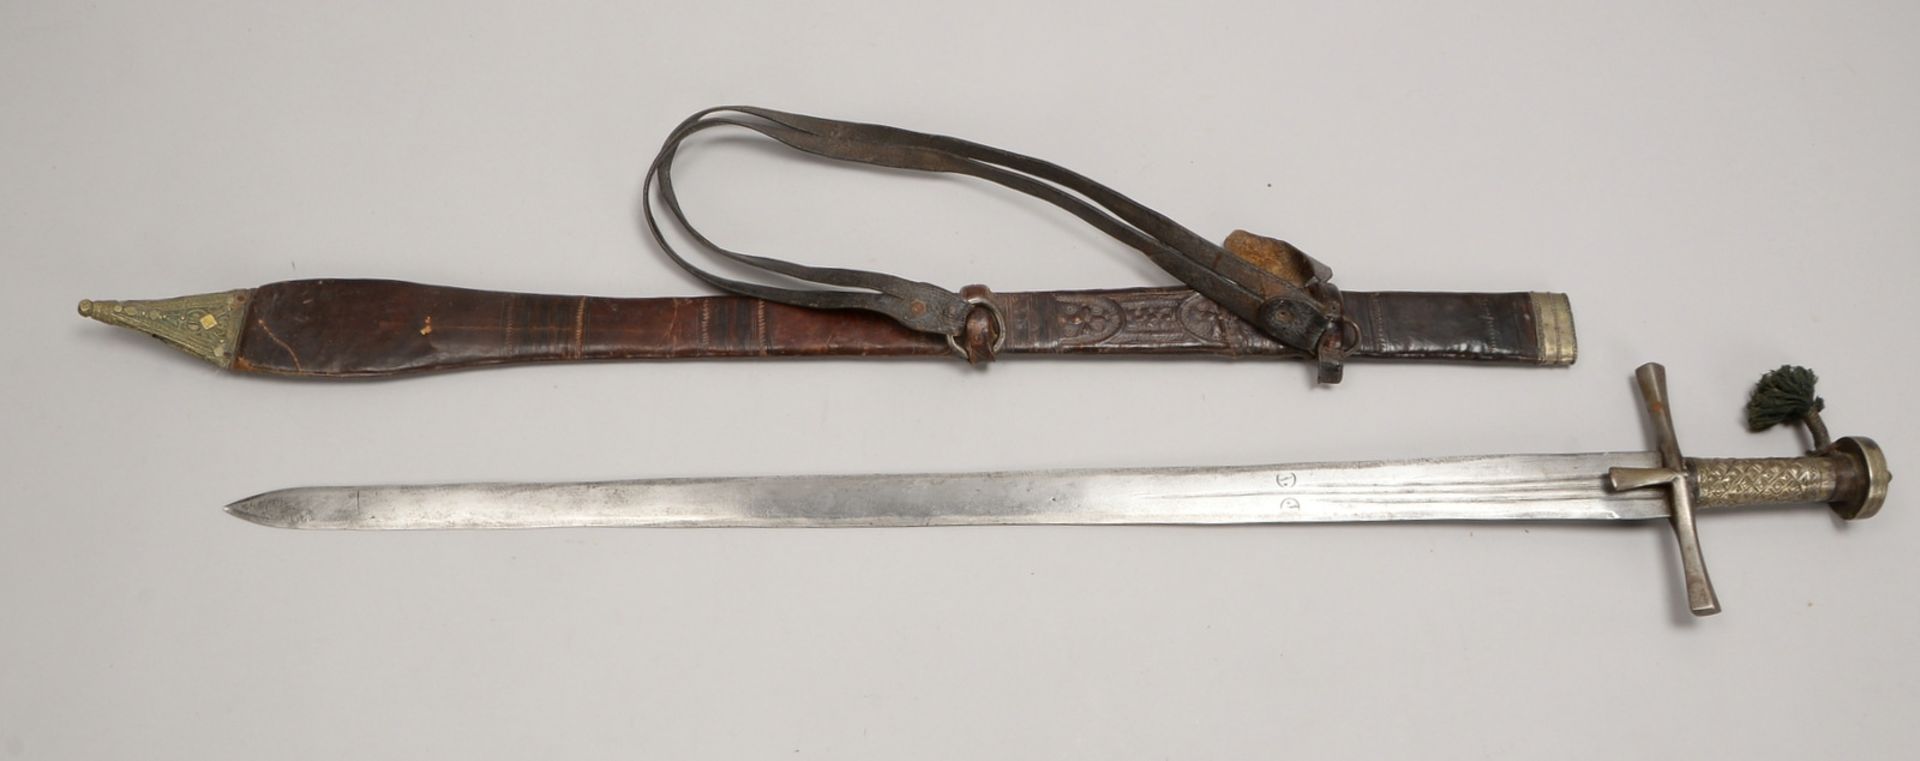 Tuareg-Schwert, lange Klinge/beidseitig 2-fach gekehlt, in Lederscheide; Länge 100 cm